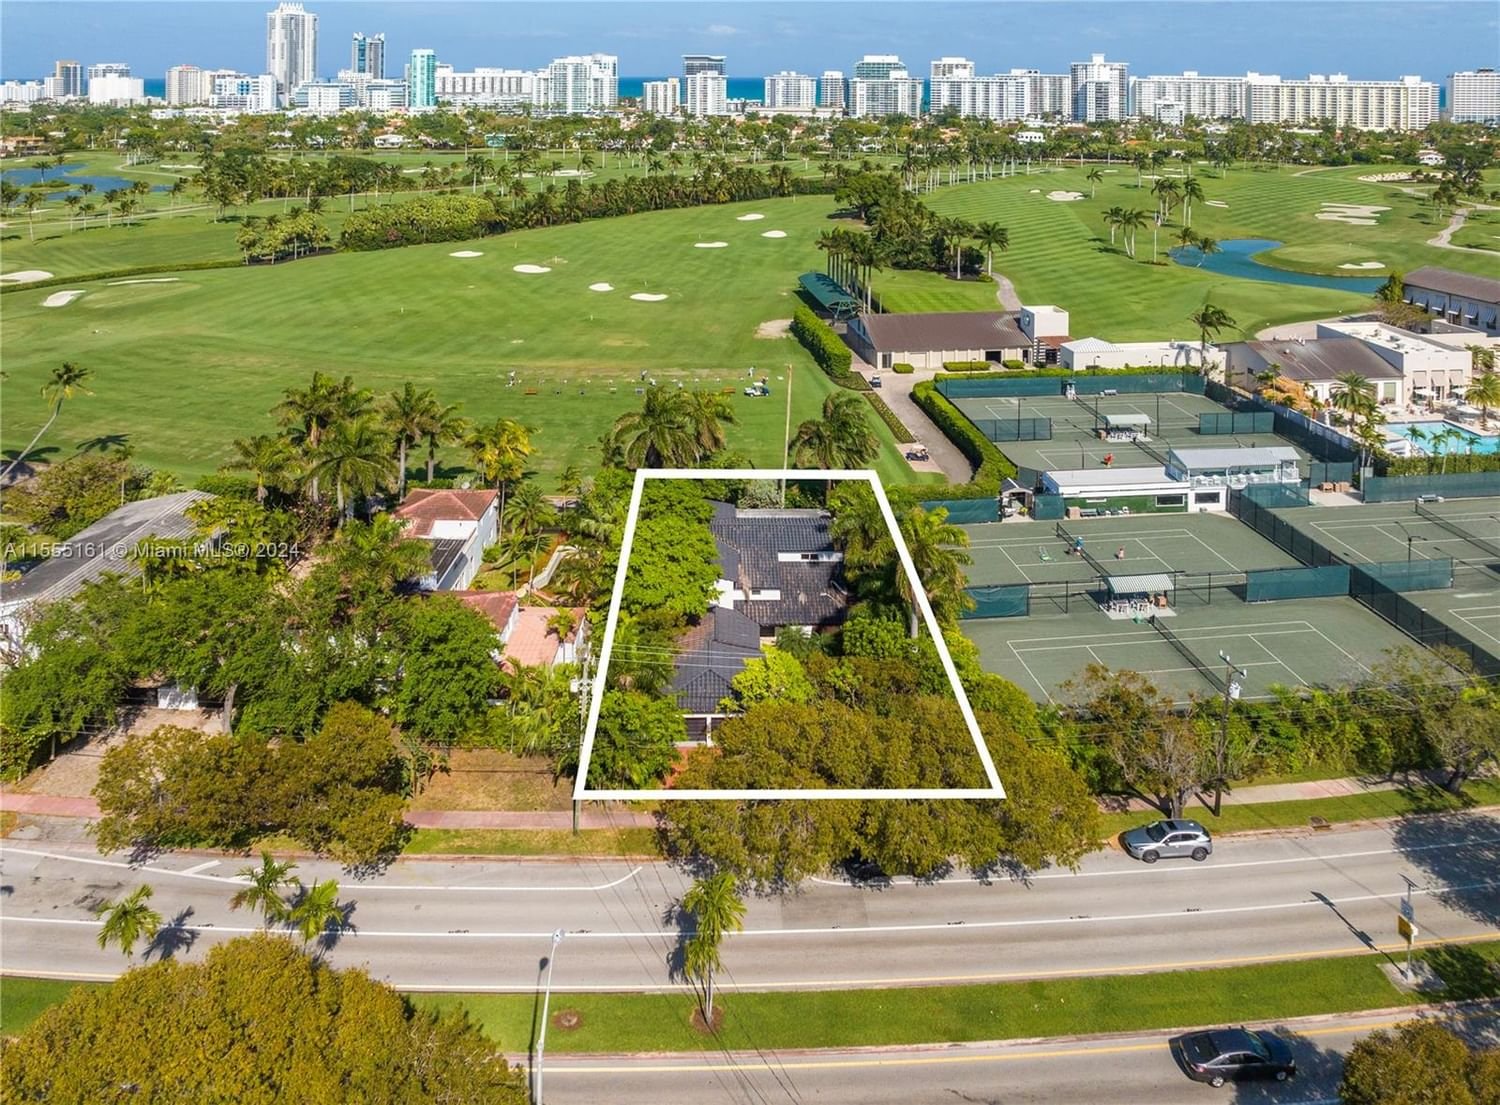 Real estate property located at 5757 Alton Rd, Miami-Dade County, LA GORCE GOLF SUB, Miami Beach, FL